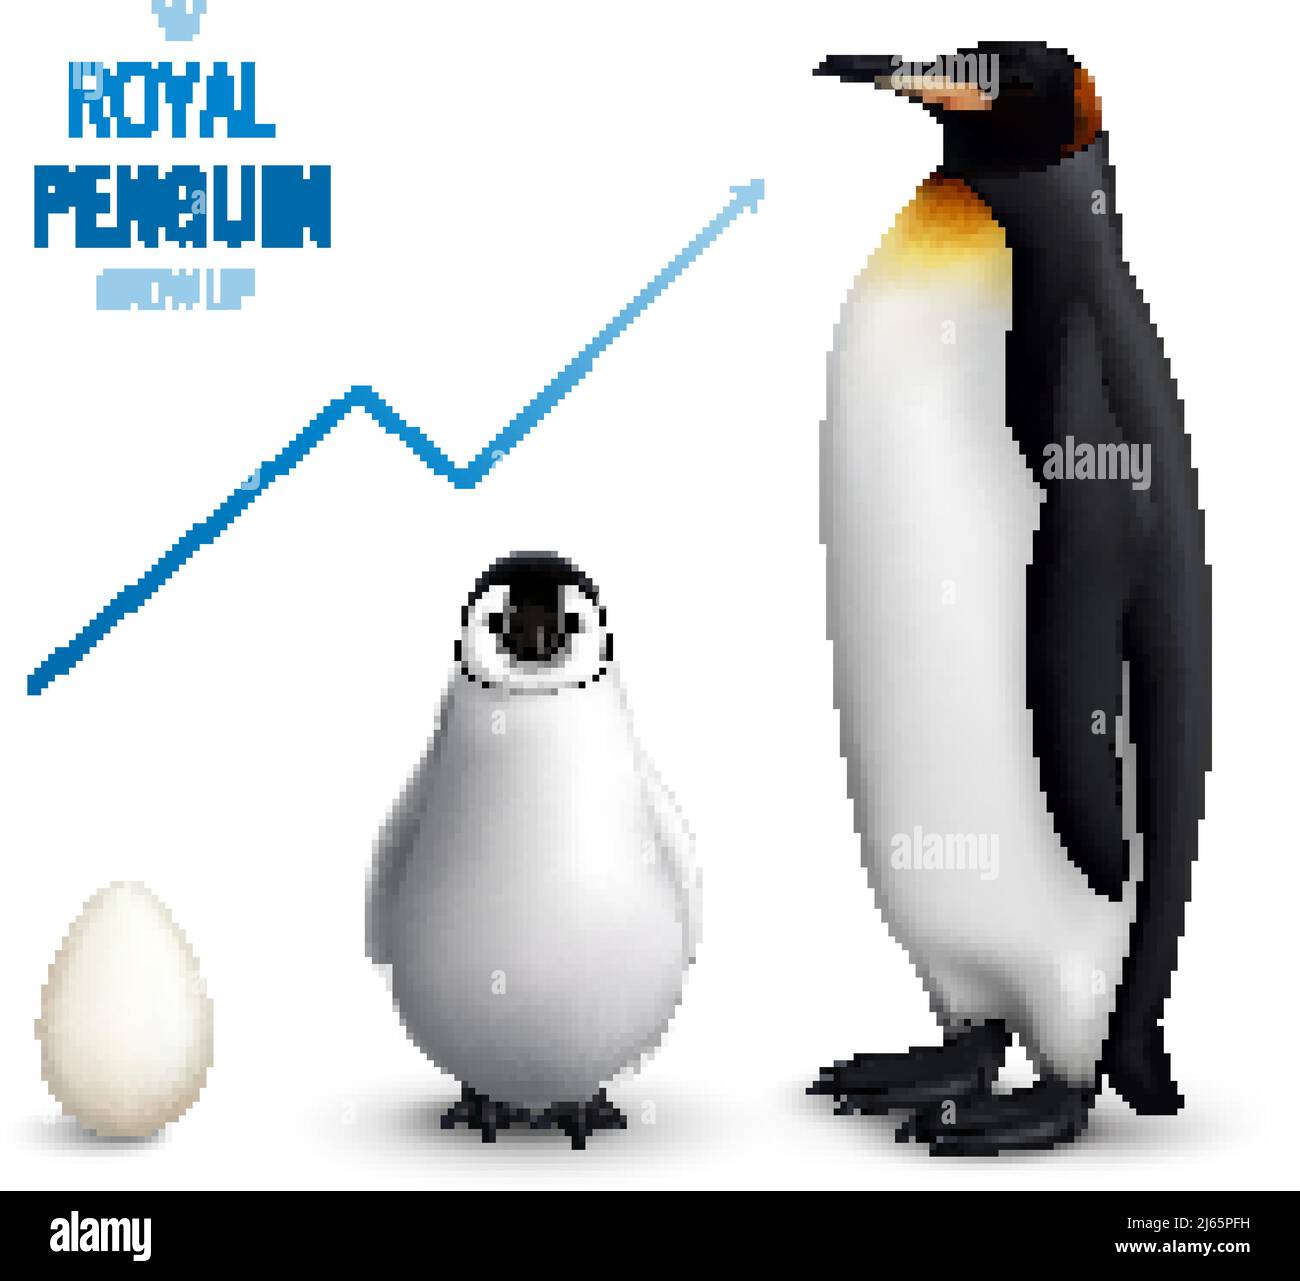 Royal Penguins cycle de vie affiche réaliste avec oeuf poussin adulte et indiquant l'illustration du vecteur de flèche ascendante Illustration de Vecteur